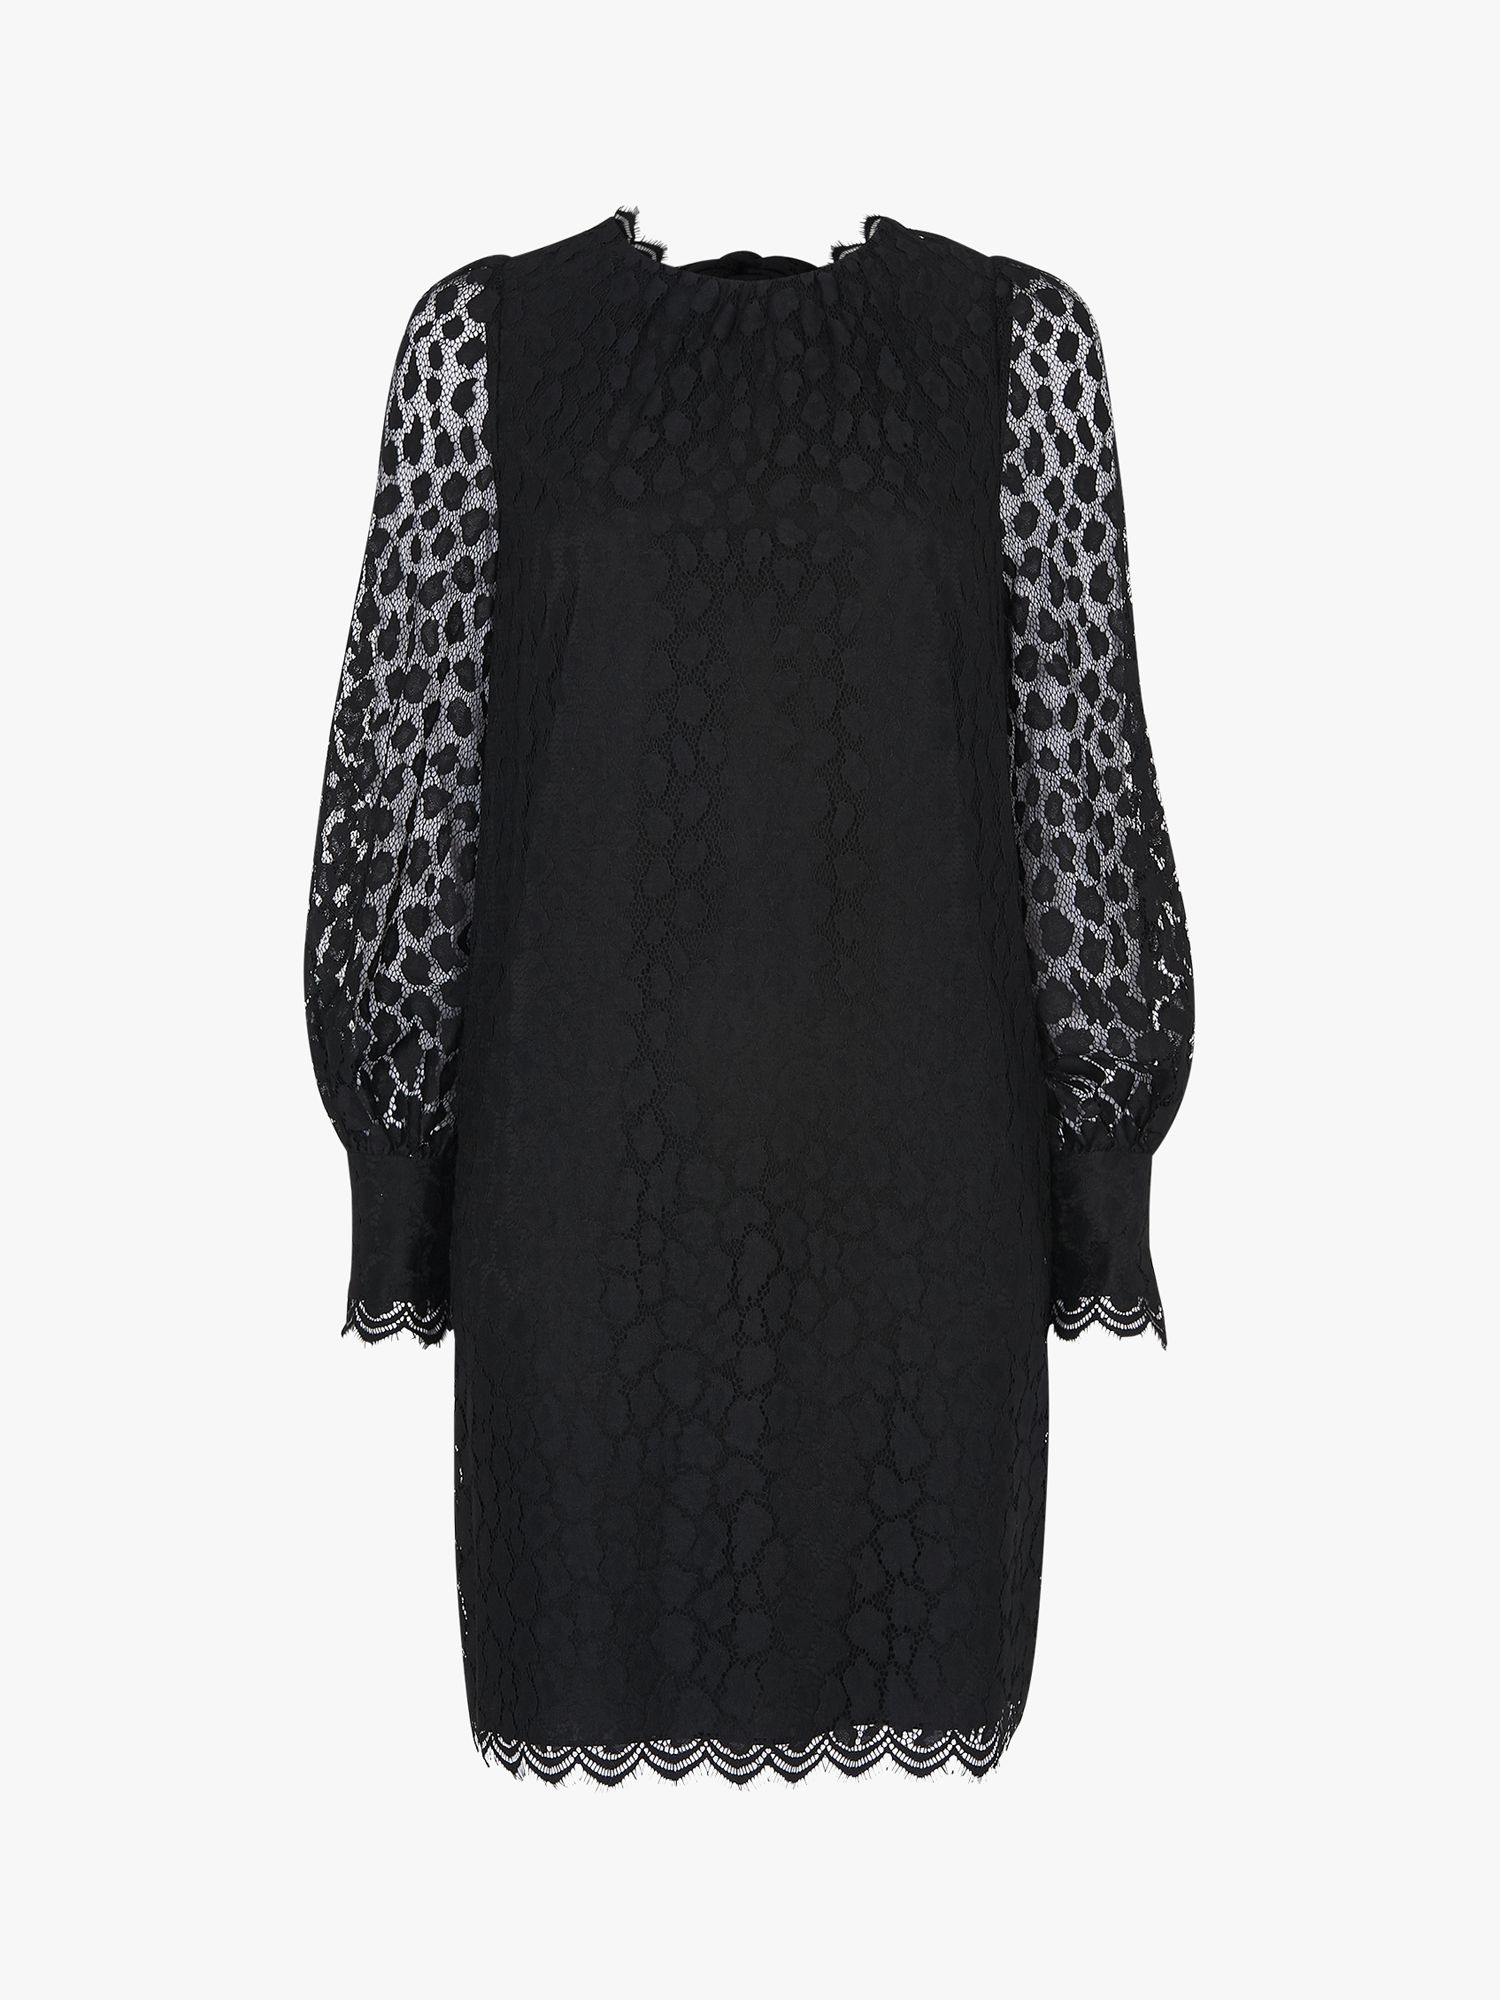 Whistles Animal Lace Dress, Black at John Lewis & Partners